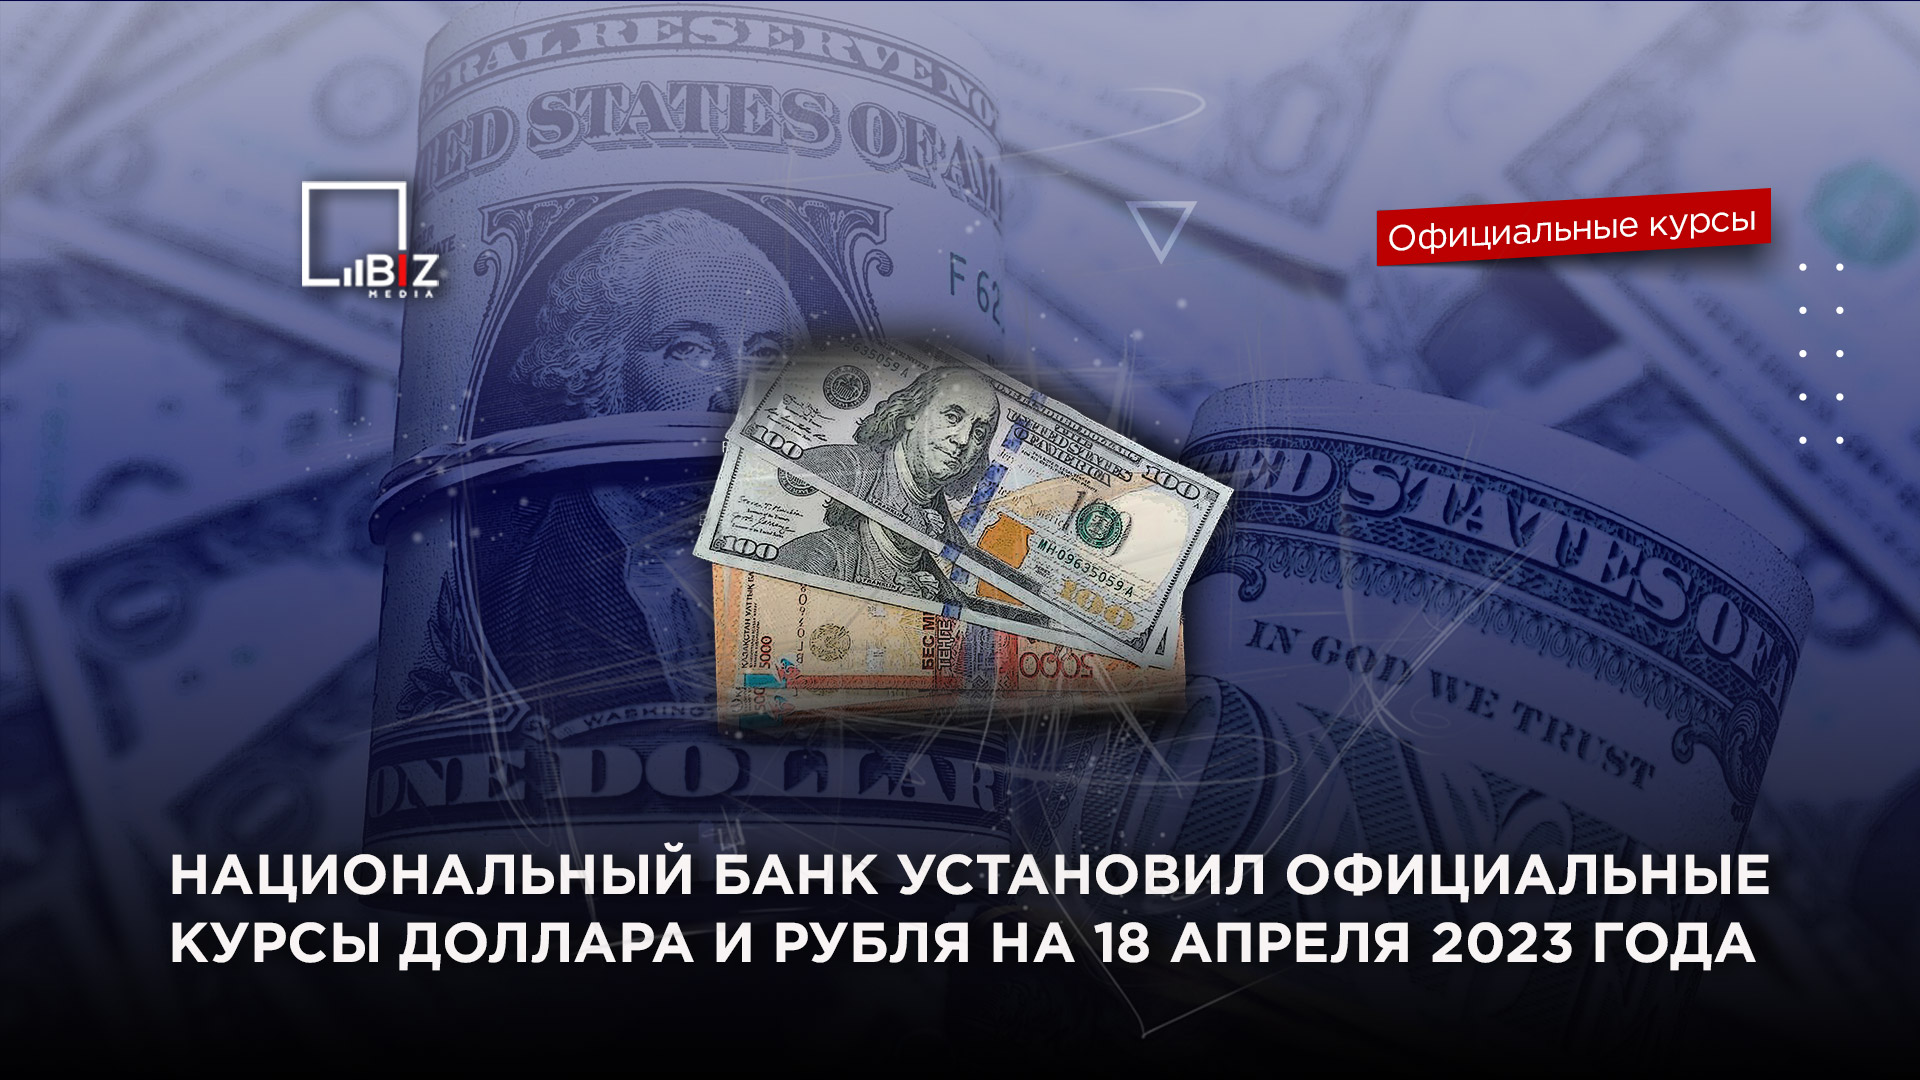 Топ 10 - самые дешевые валюты в мире в 2023 году